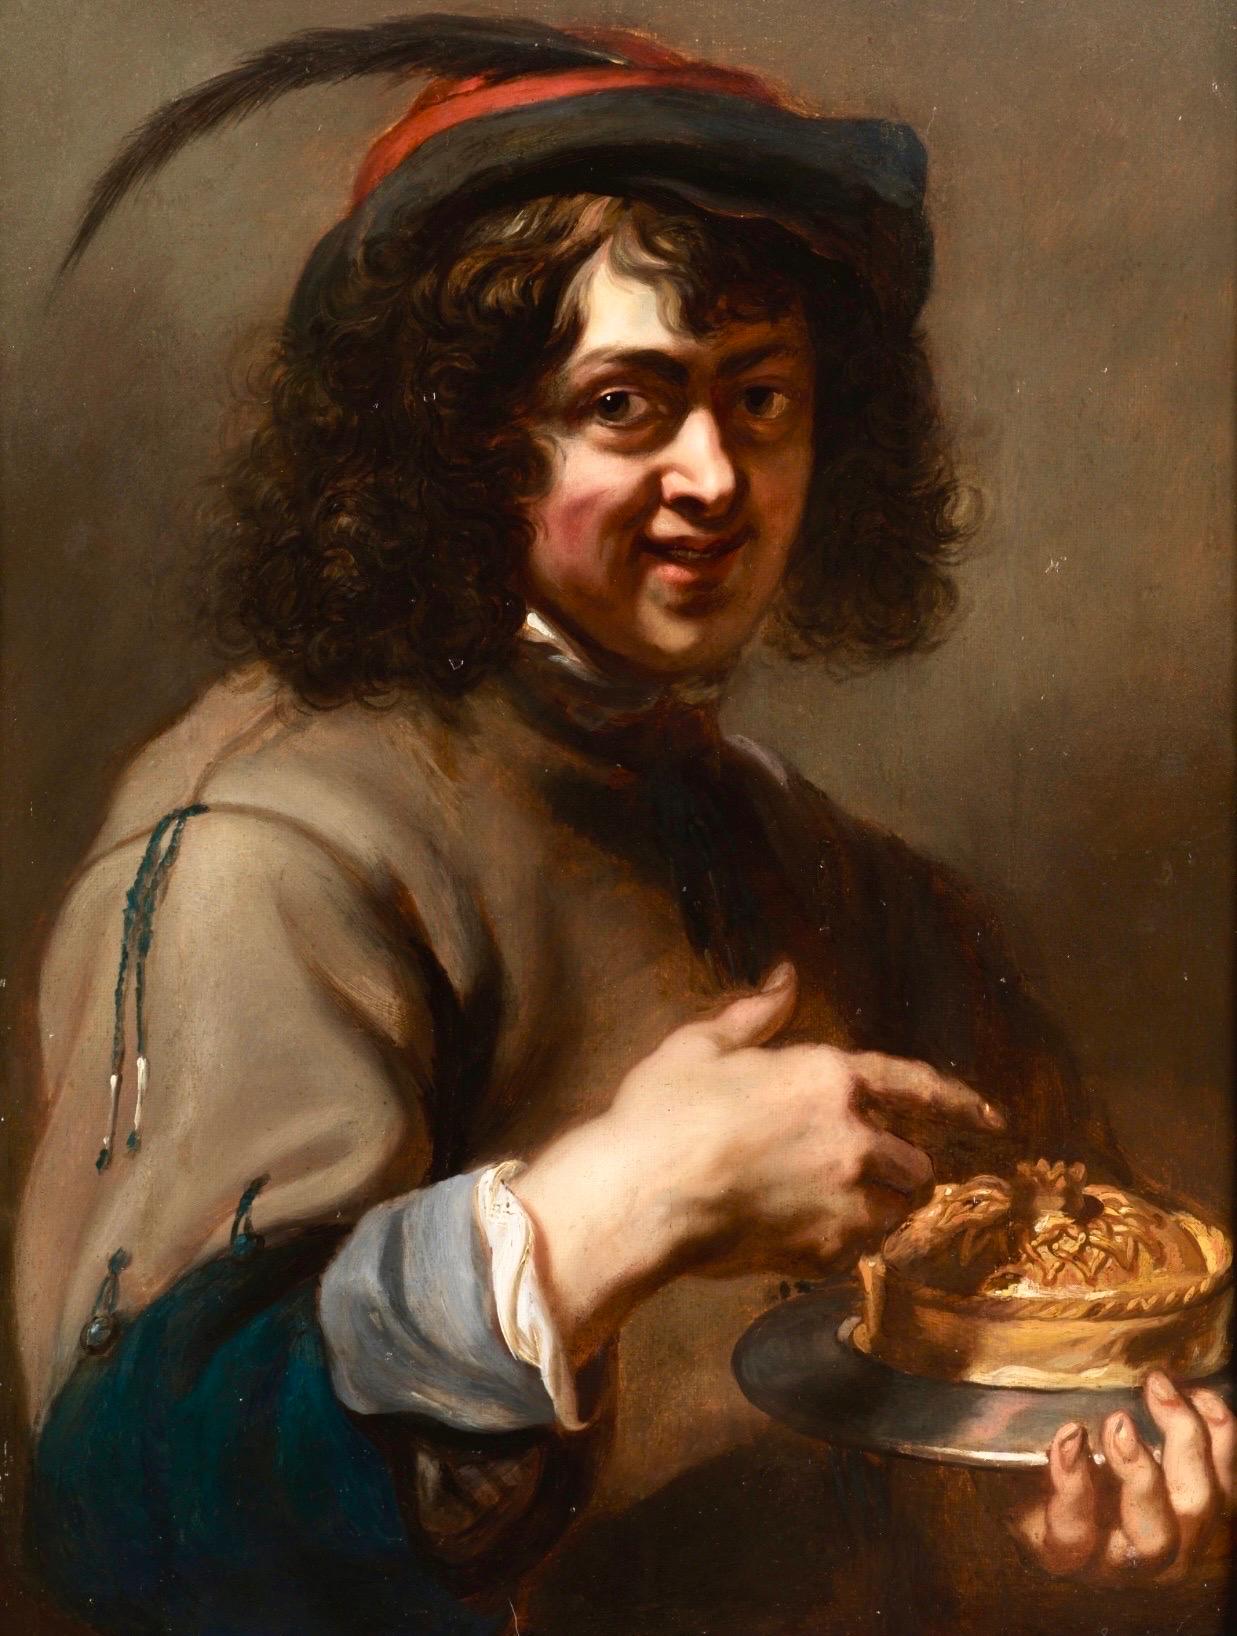  Jan Cossiers Portrait Painting – Flämischer Alter Meister des 17. Jahrhunderts - Ein Junge genießt eine Pastete, Allegorie des Geschmacks